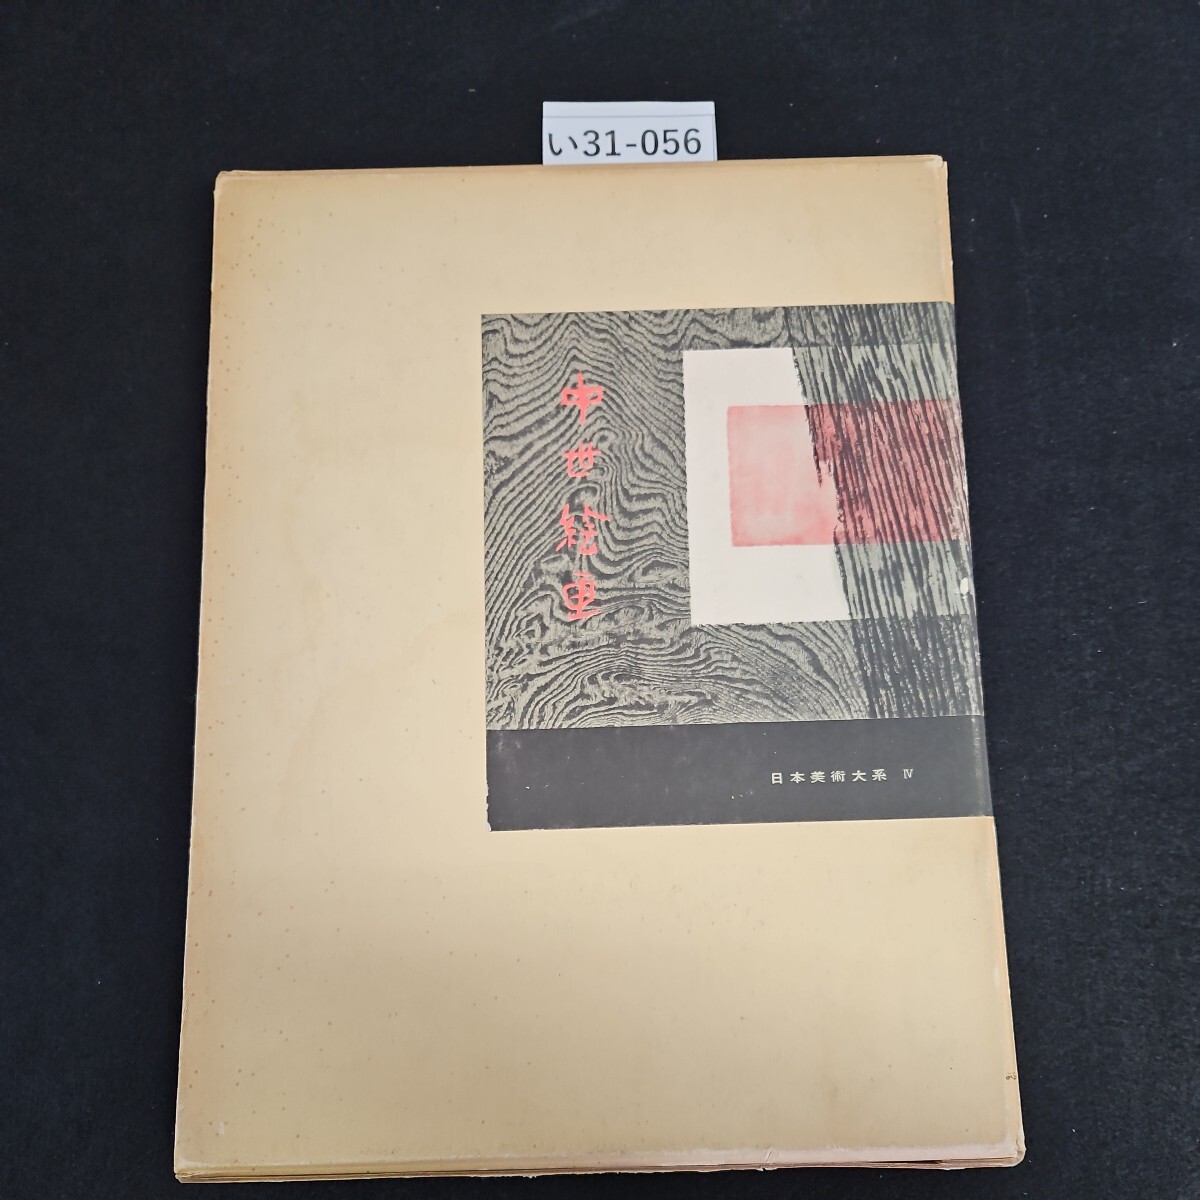 い31-056 日本美術大系 IV 中世絵画 講談社_画像1